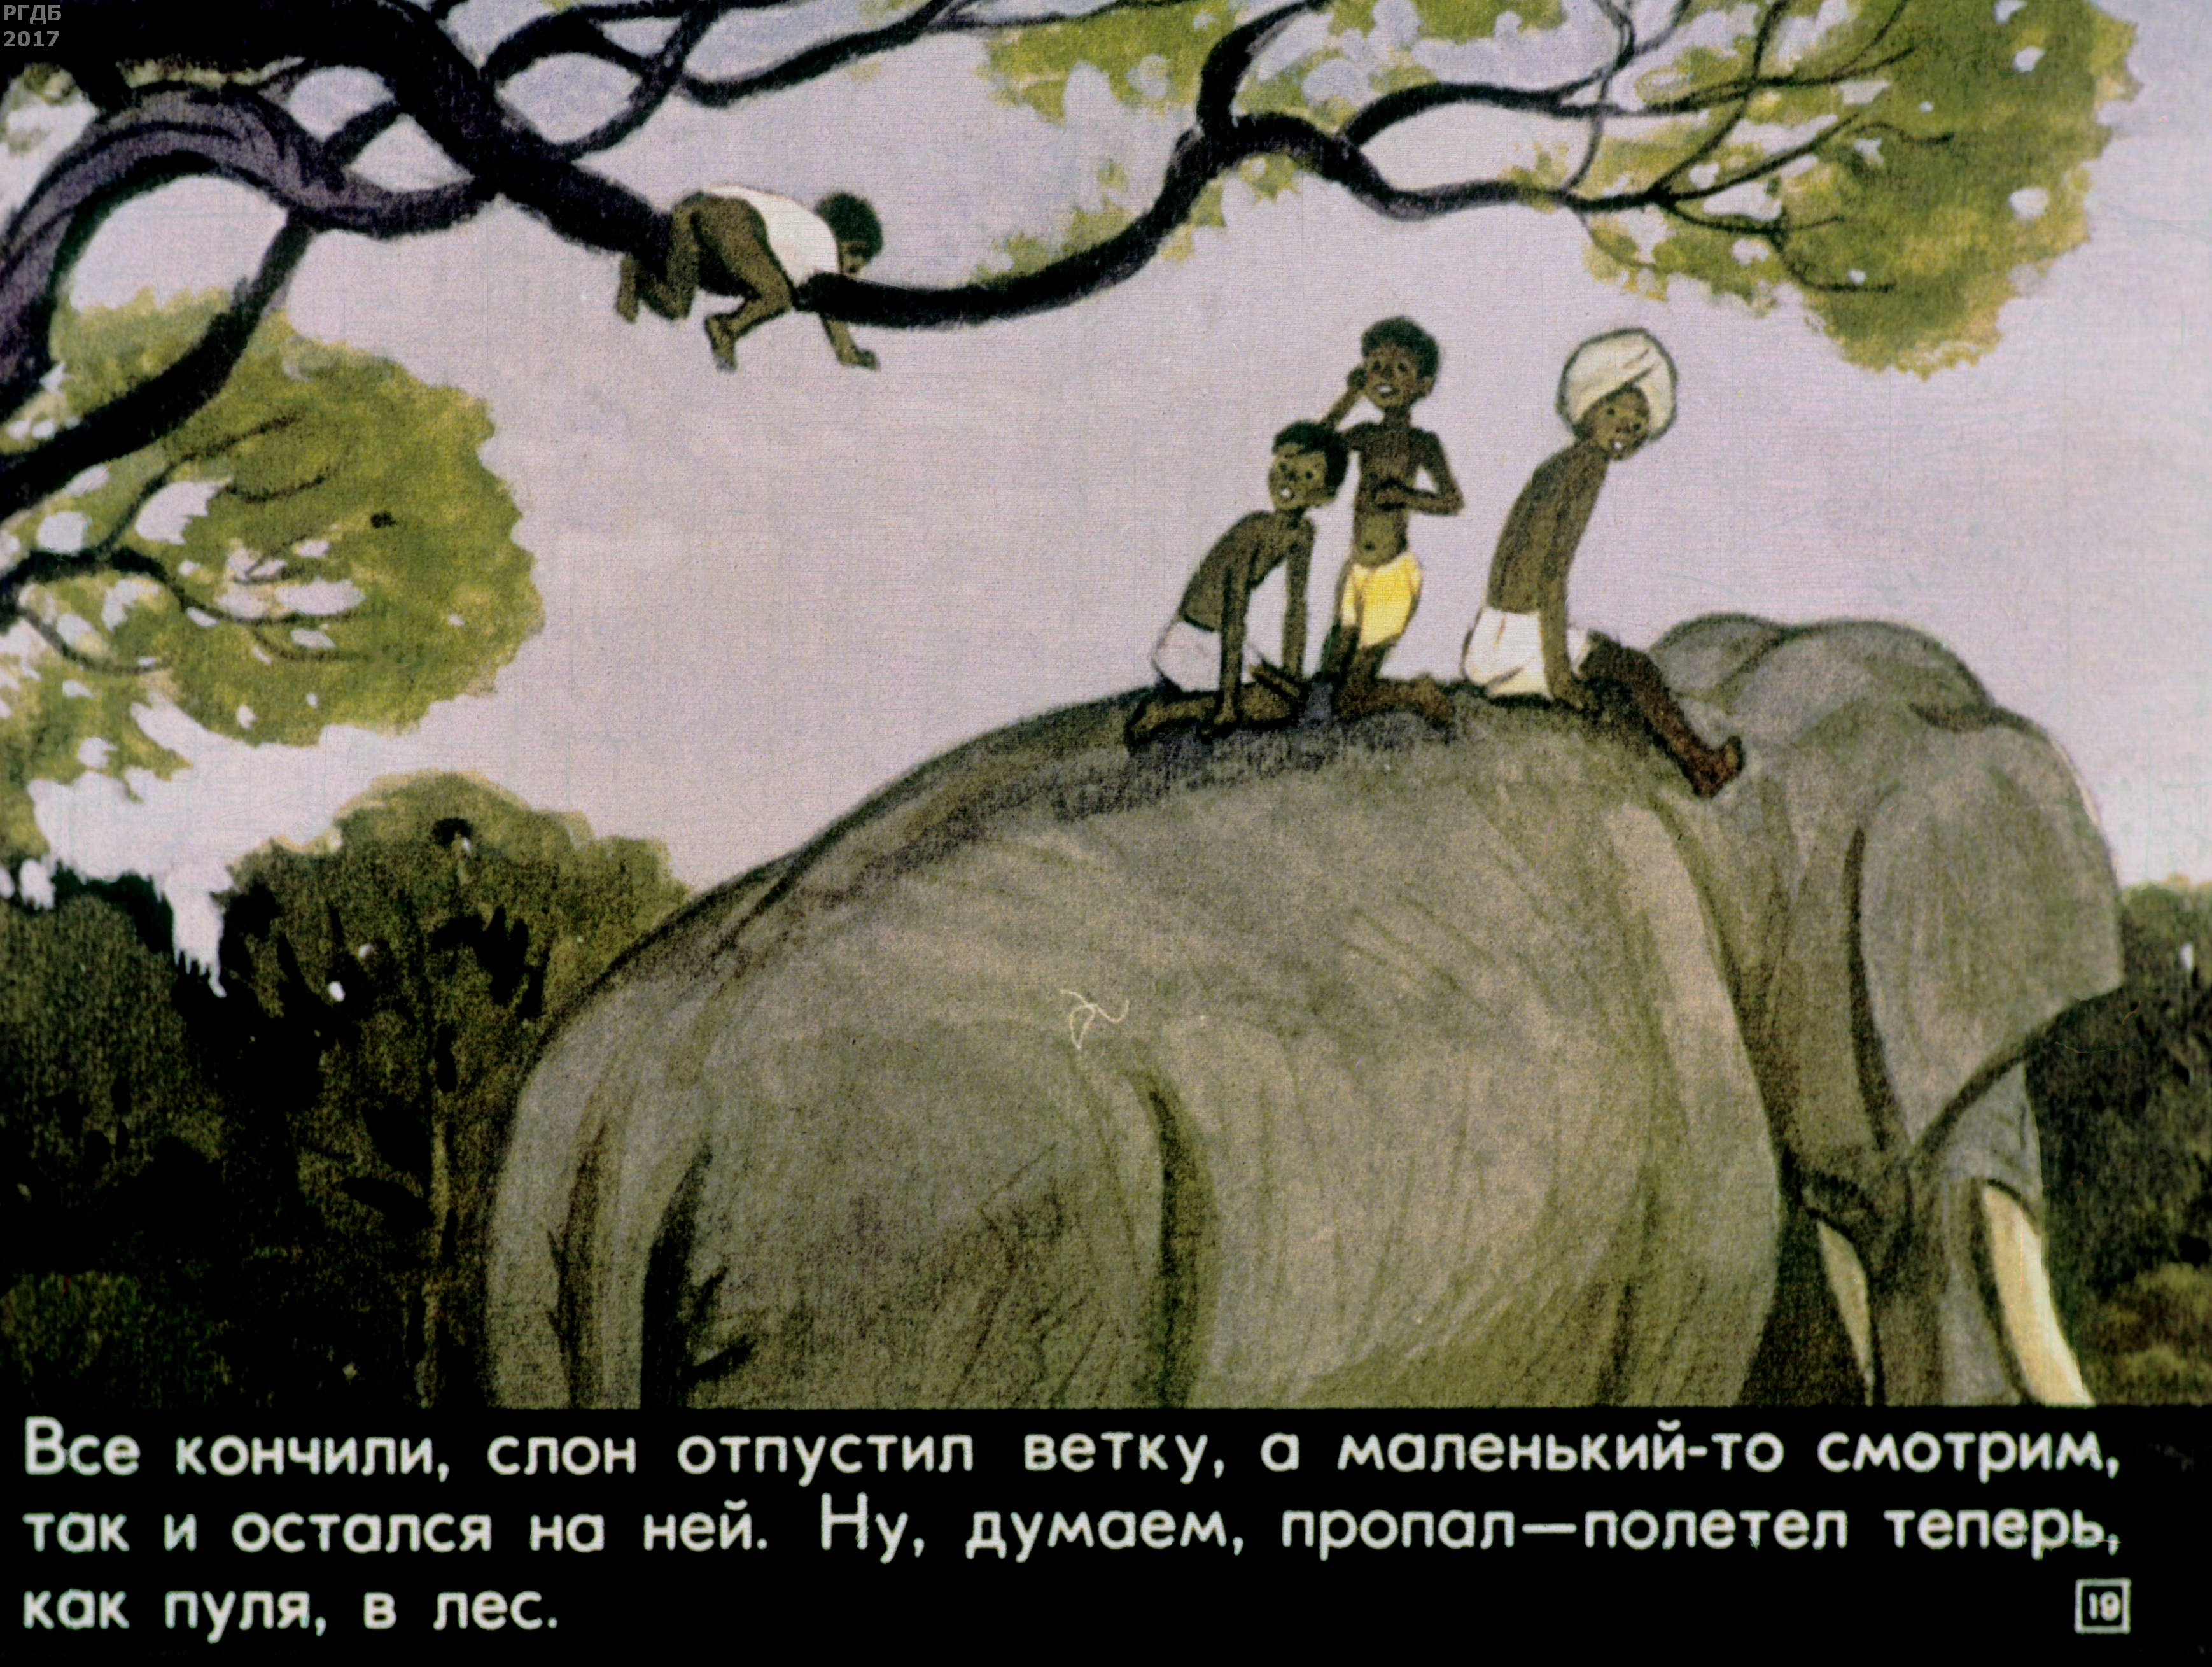 Читать про слона. Житкова про слона. Иллюстрации к рассказу Житкова про слона. Житков про слона иллюстрации.